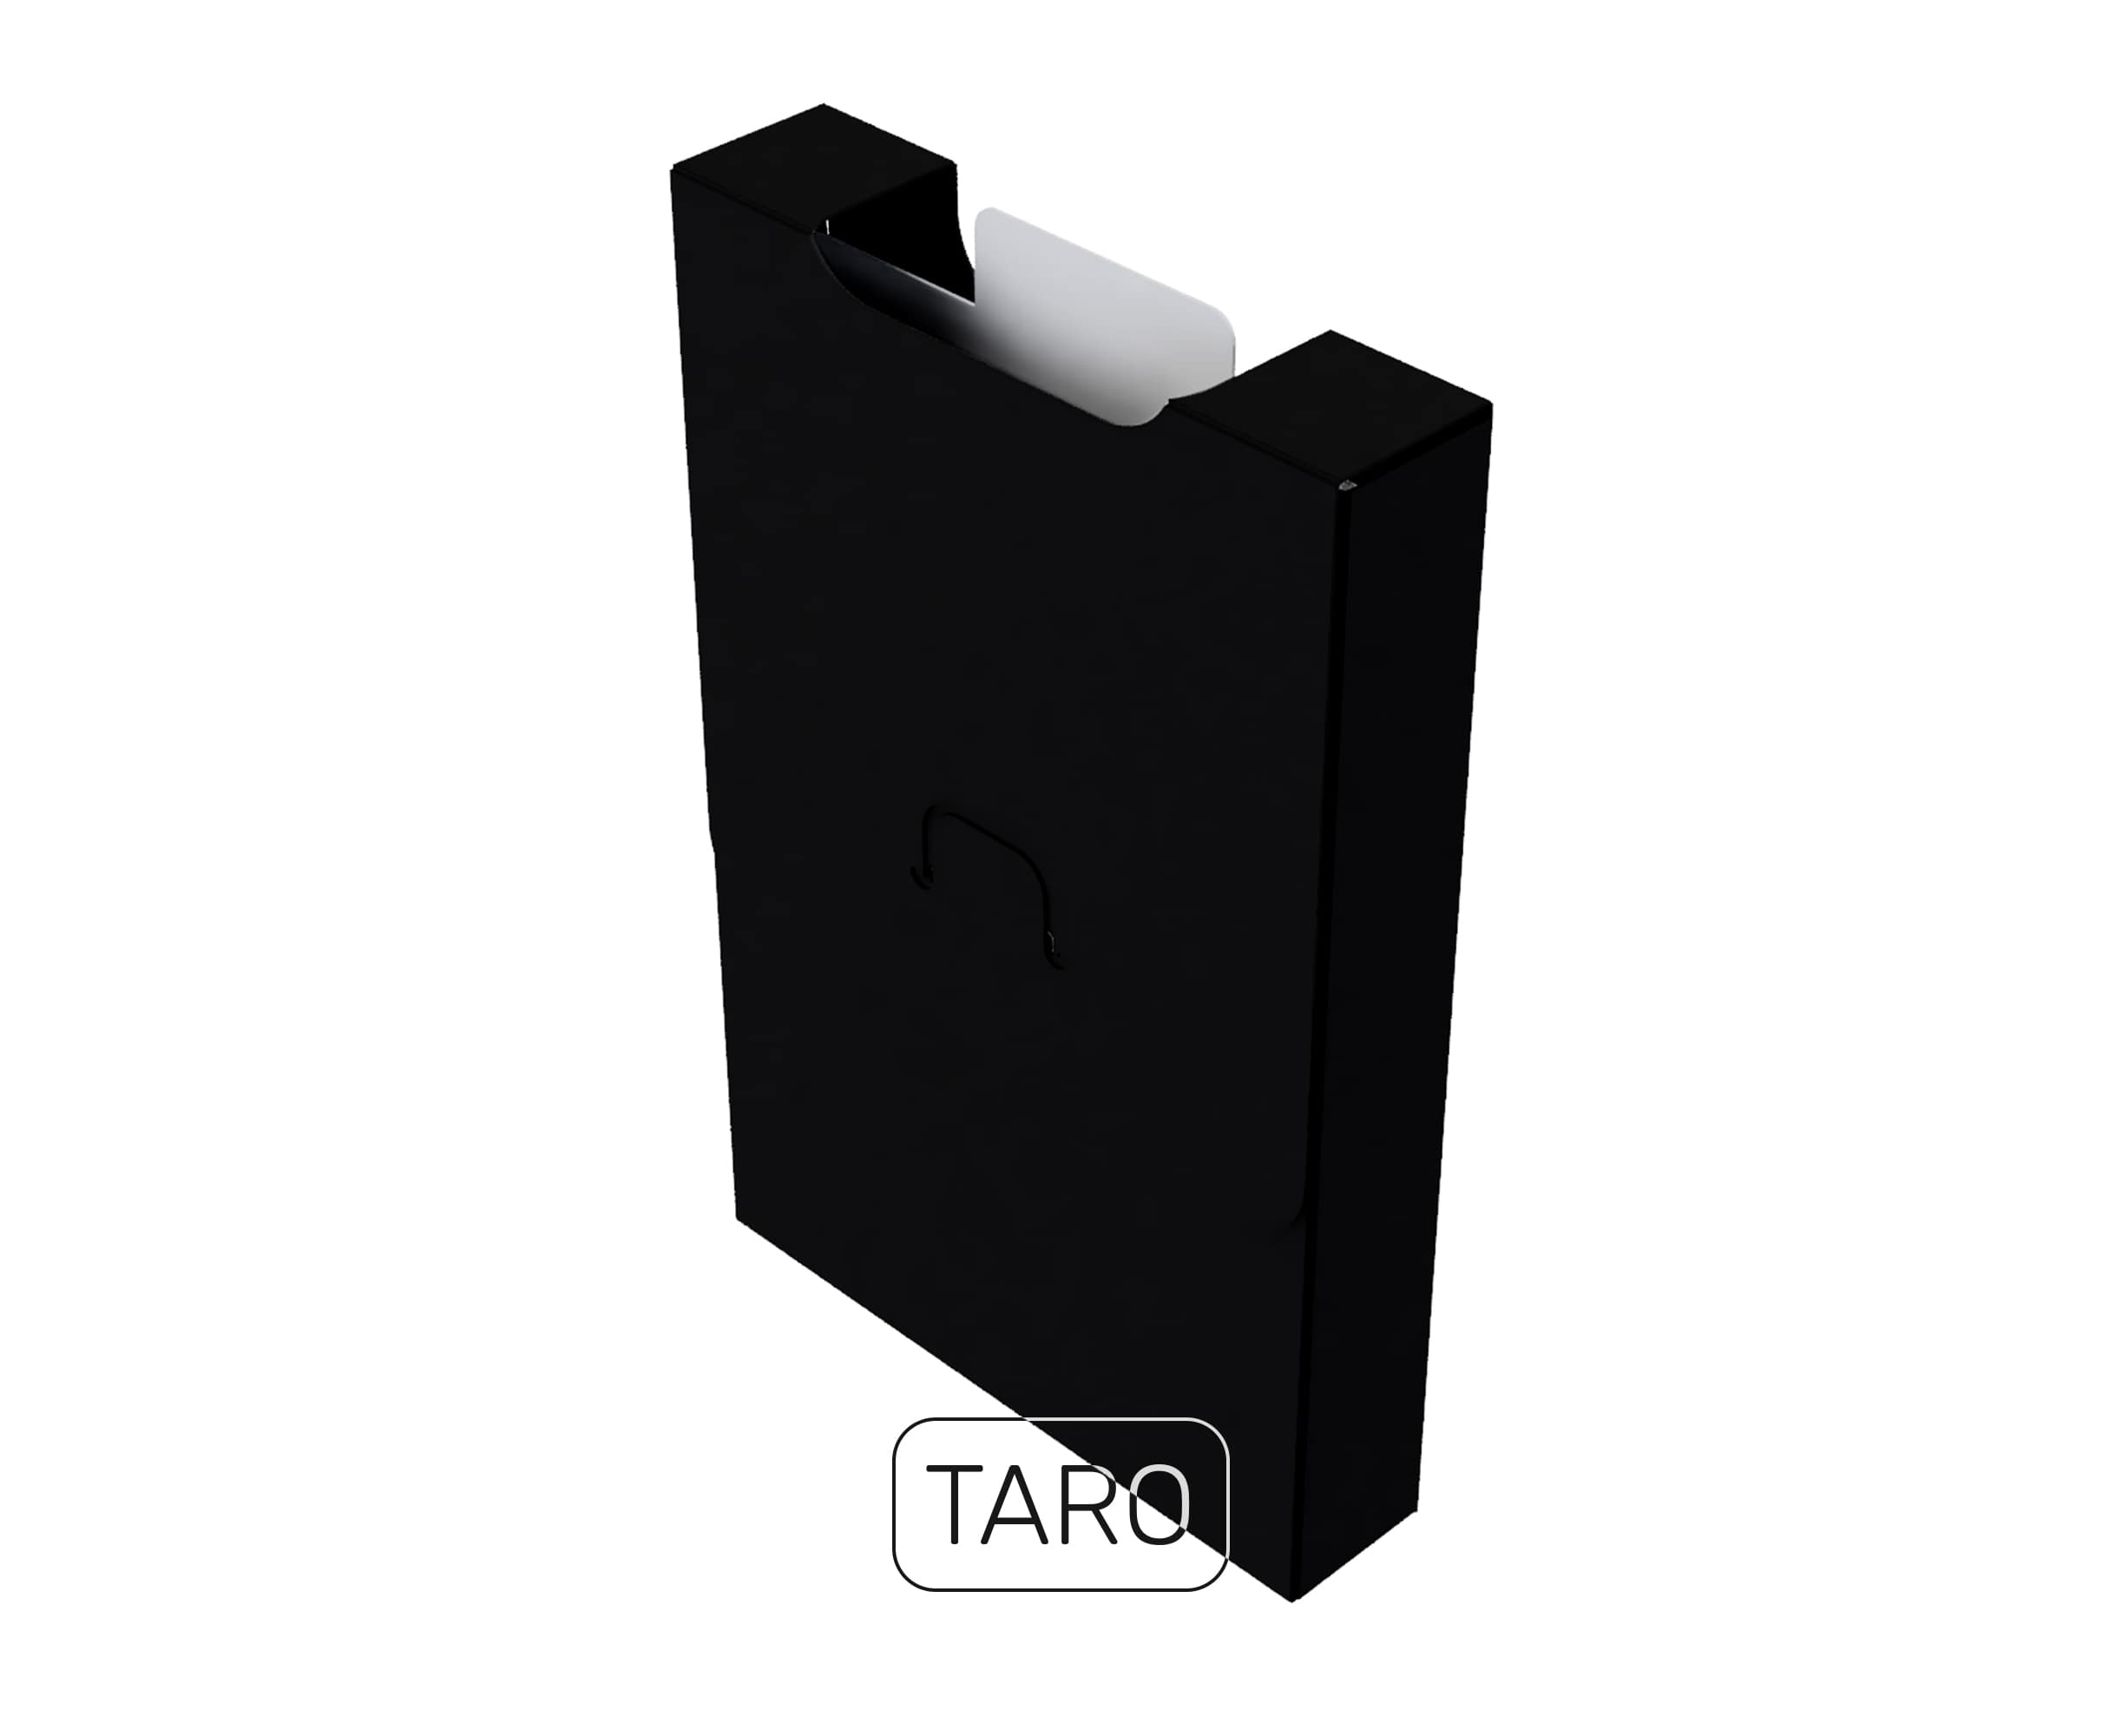  UniqCardFile Taro 20mm ()